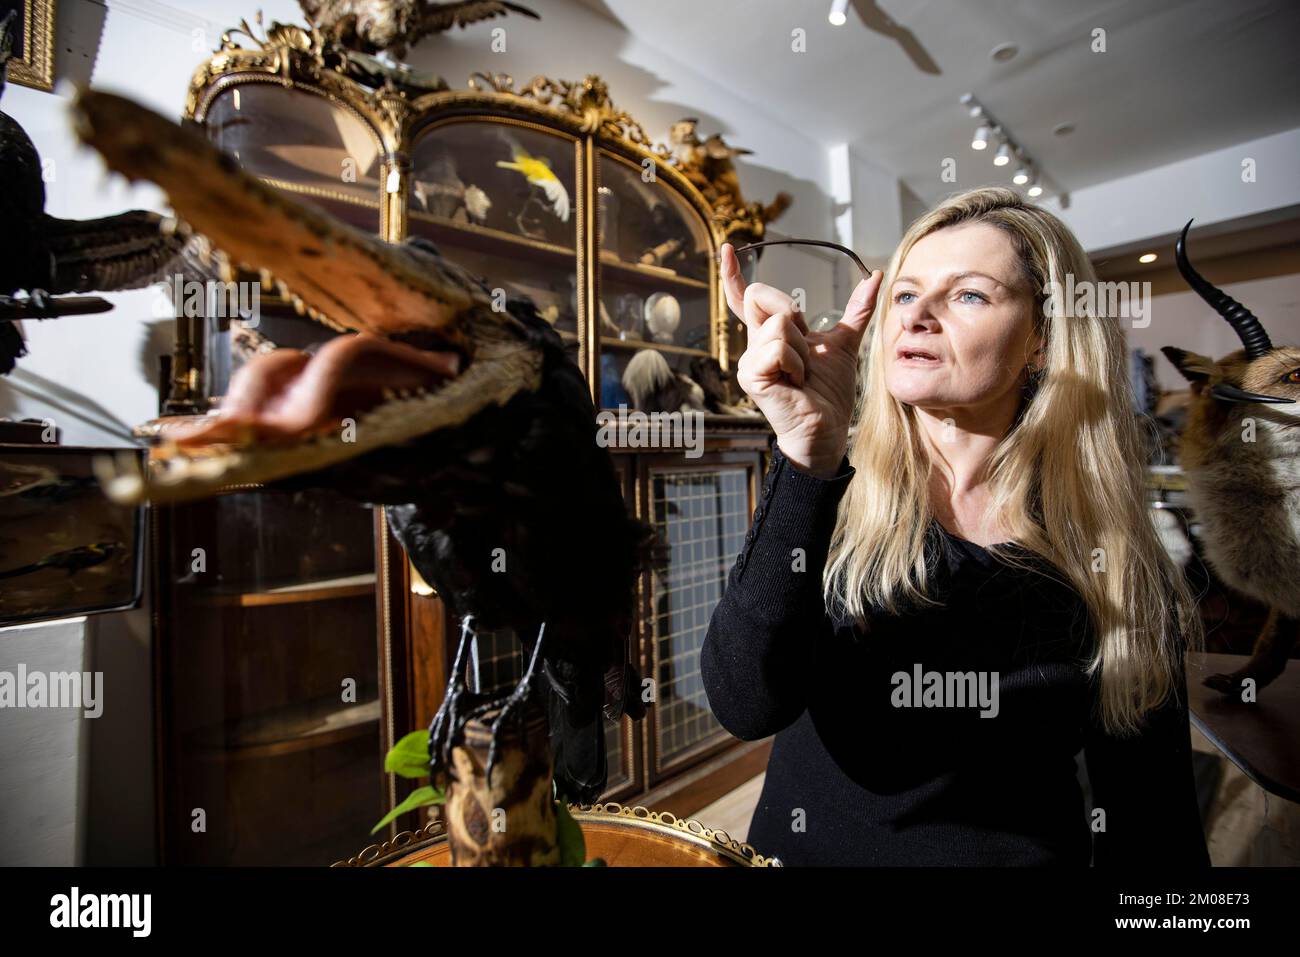 LO STRANO E IL MERAVIGLIOSO ALLE ASTE CURATE Rachael Osborn-Howard in possesso di un raro Dodo Bird osso, l'uccello di preda estinto dal 1690 circa. Foto Stock